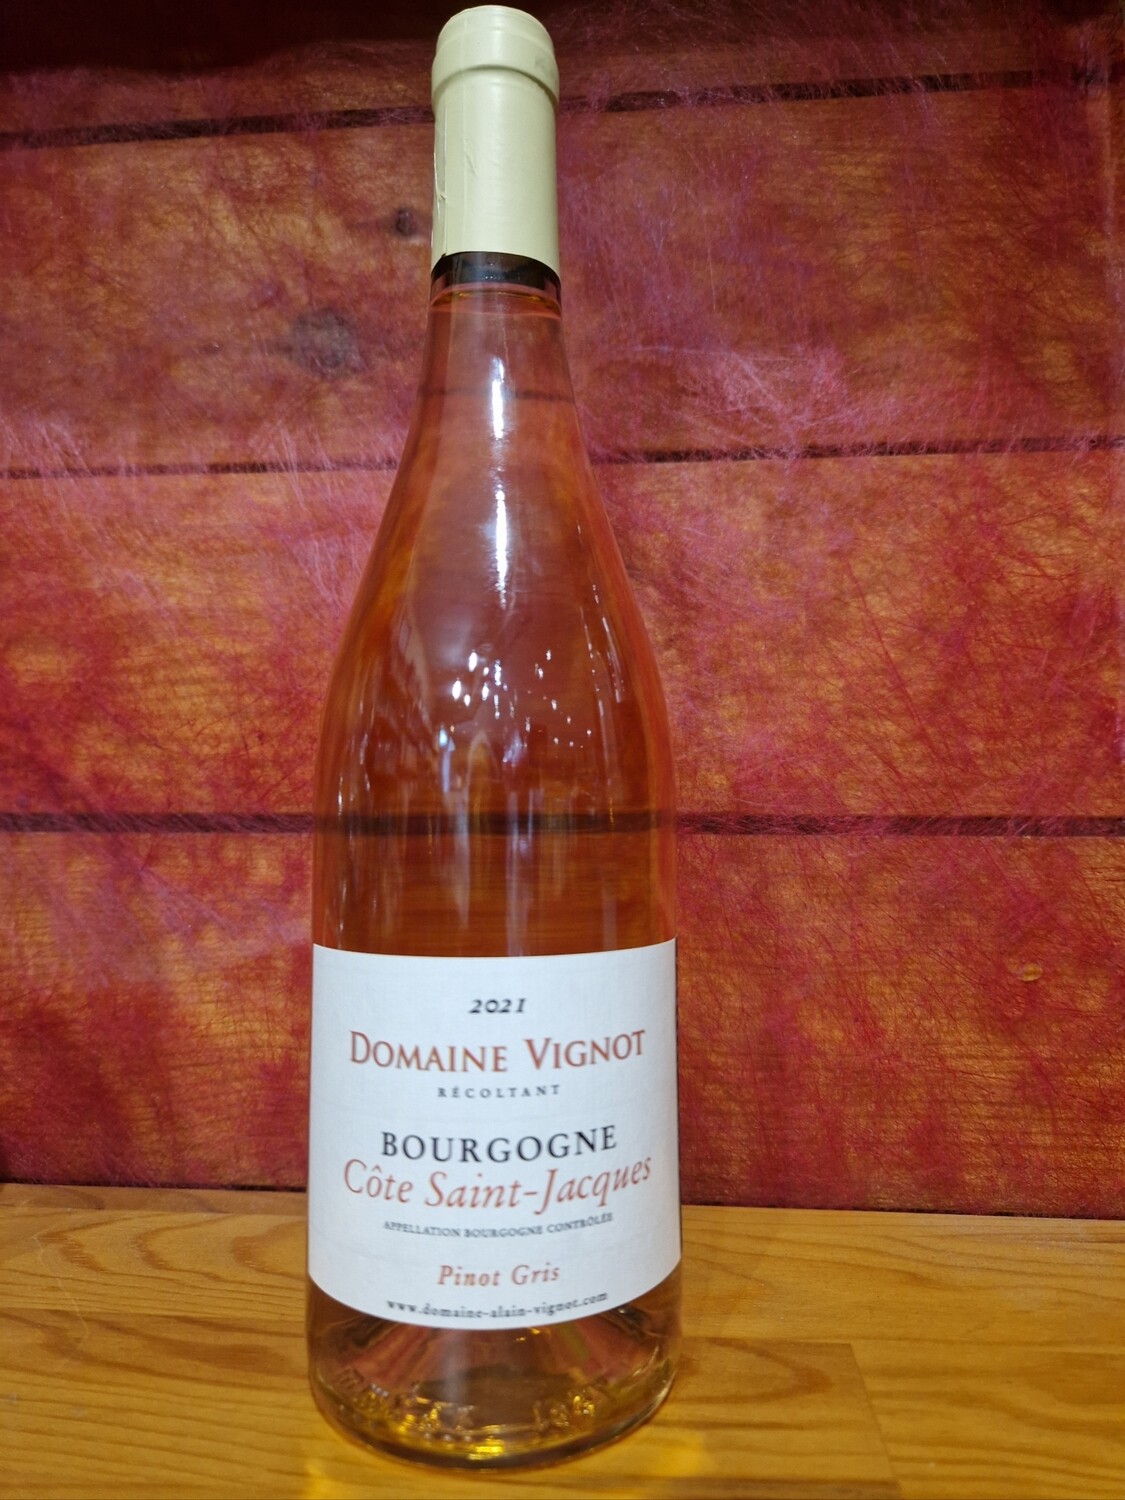 Bourgogne Côte Saint Jacques pinot gris 2021 domaine Vignot